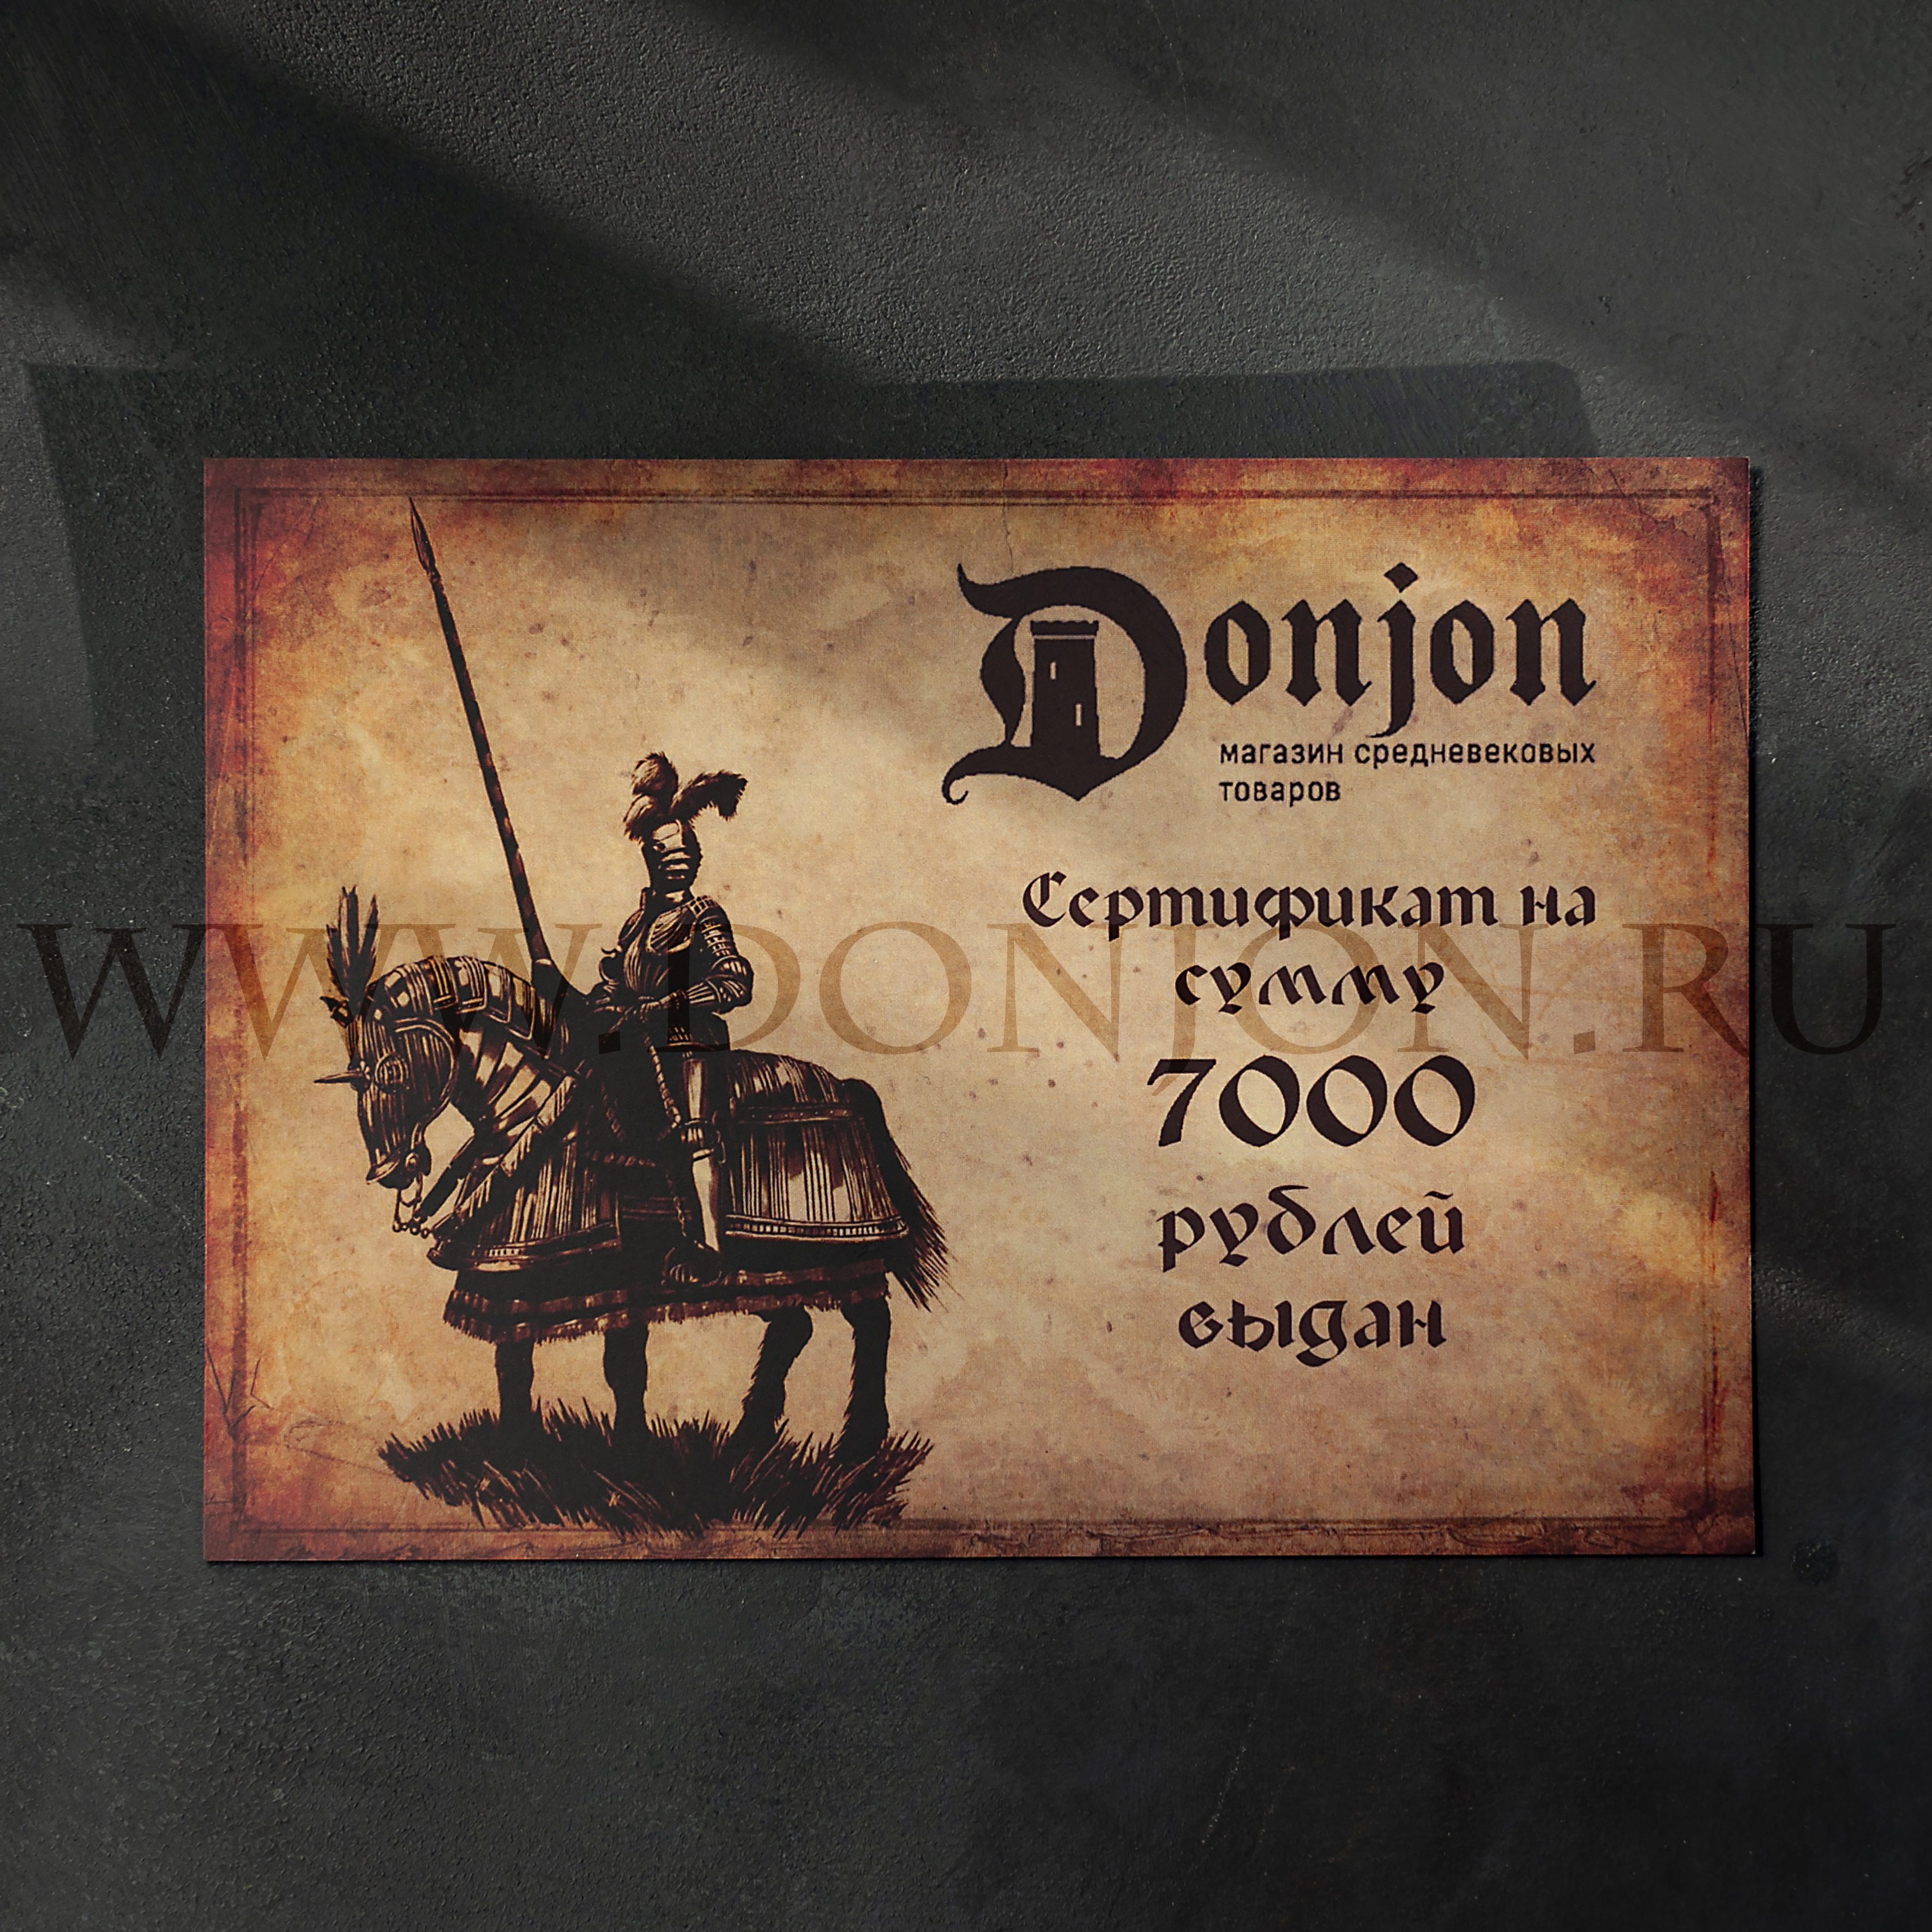 Подарочный сертификат магазина "Донжон"